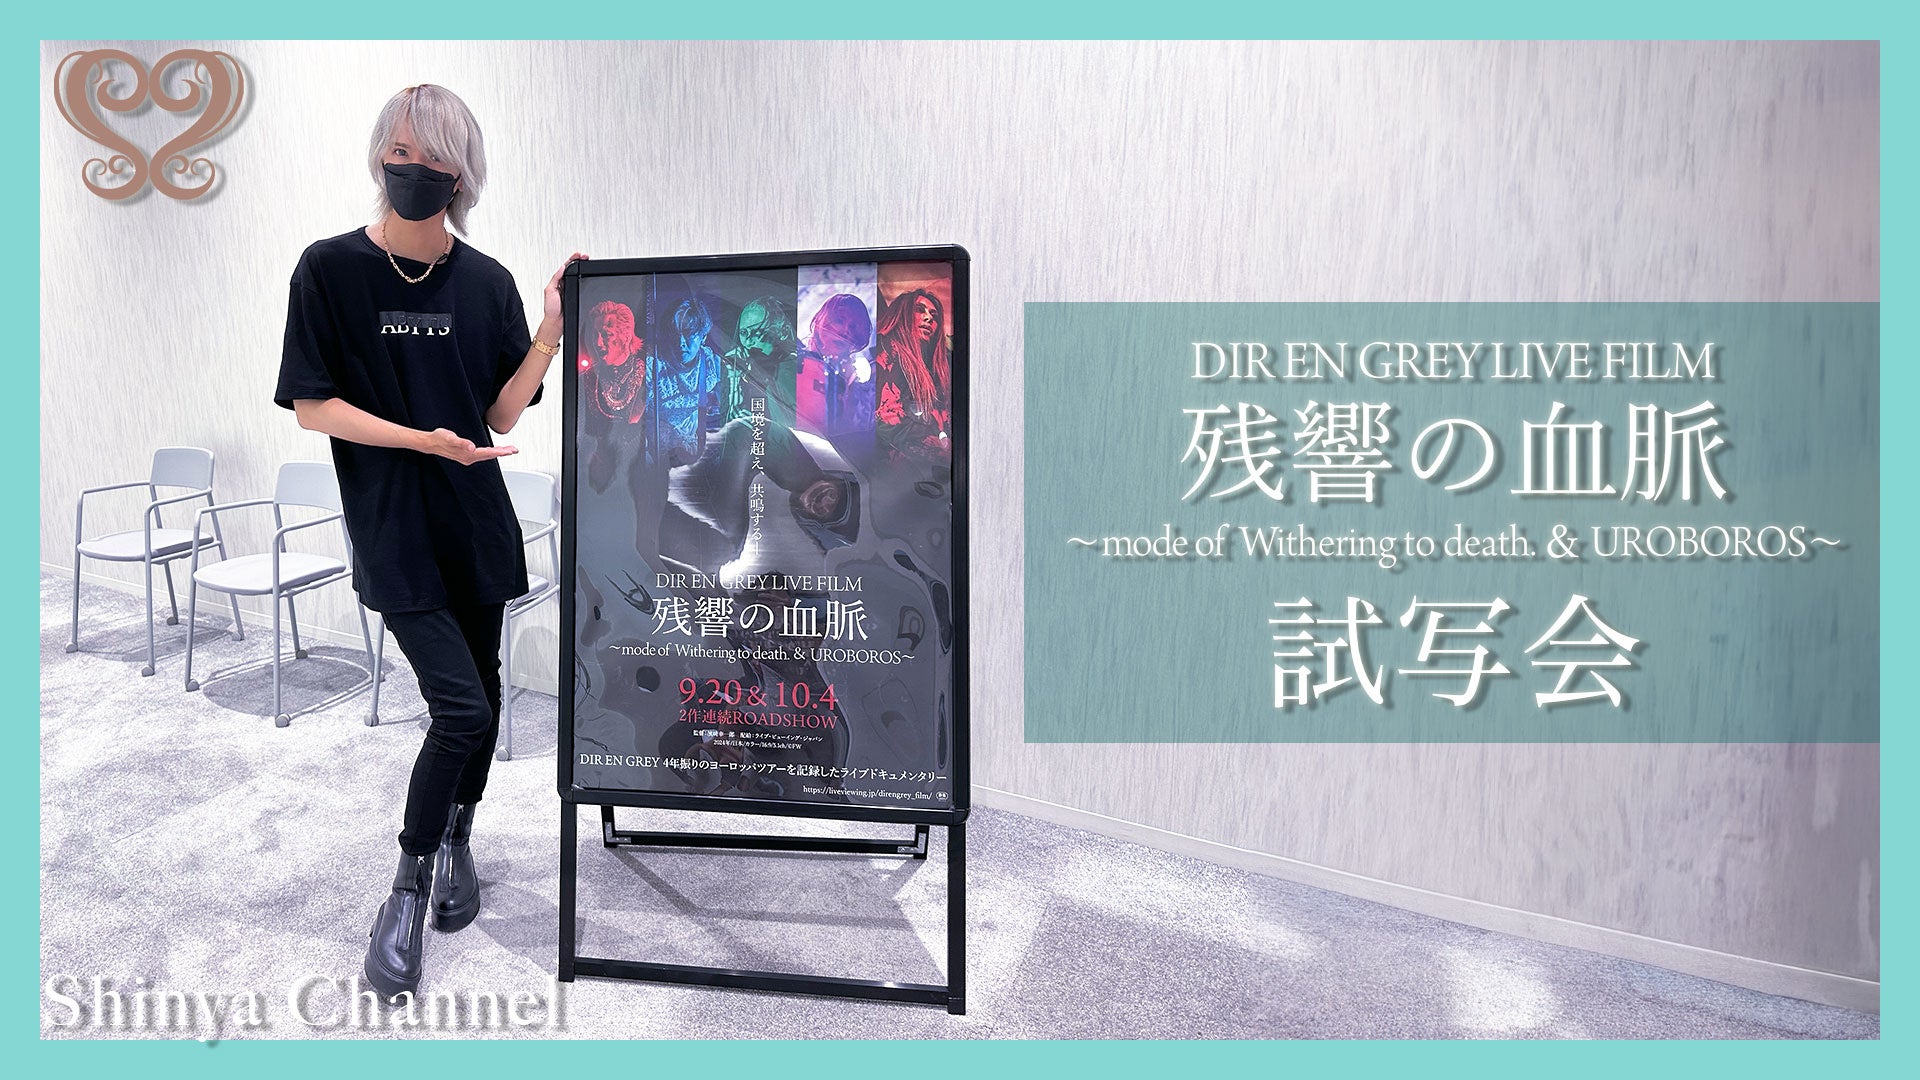 DIR EN GREYドラマー Shinyaが運営するYouTube Channel「Shinya Channel」と「DIR EN GREY LIVE FILM 残響の血脈」コラボ企画決定！